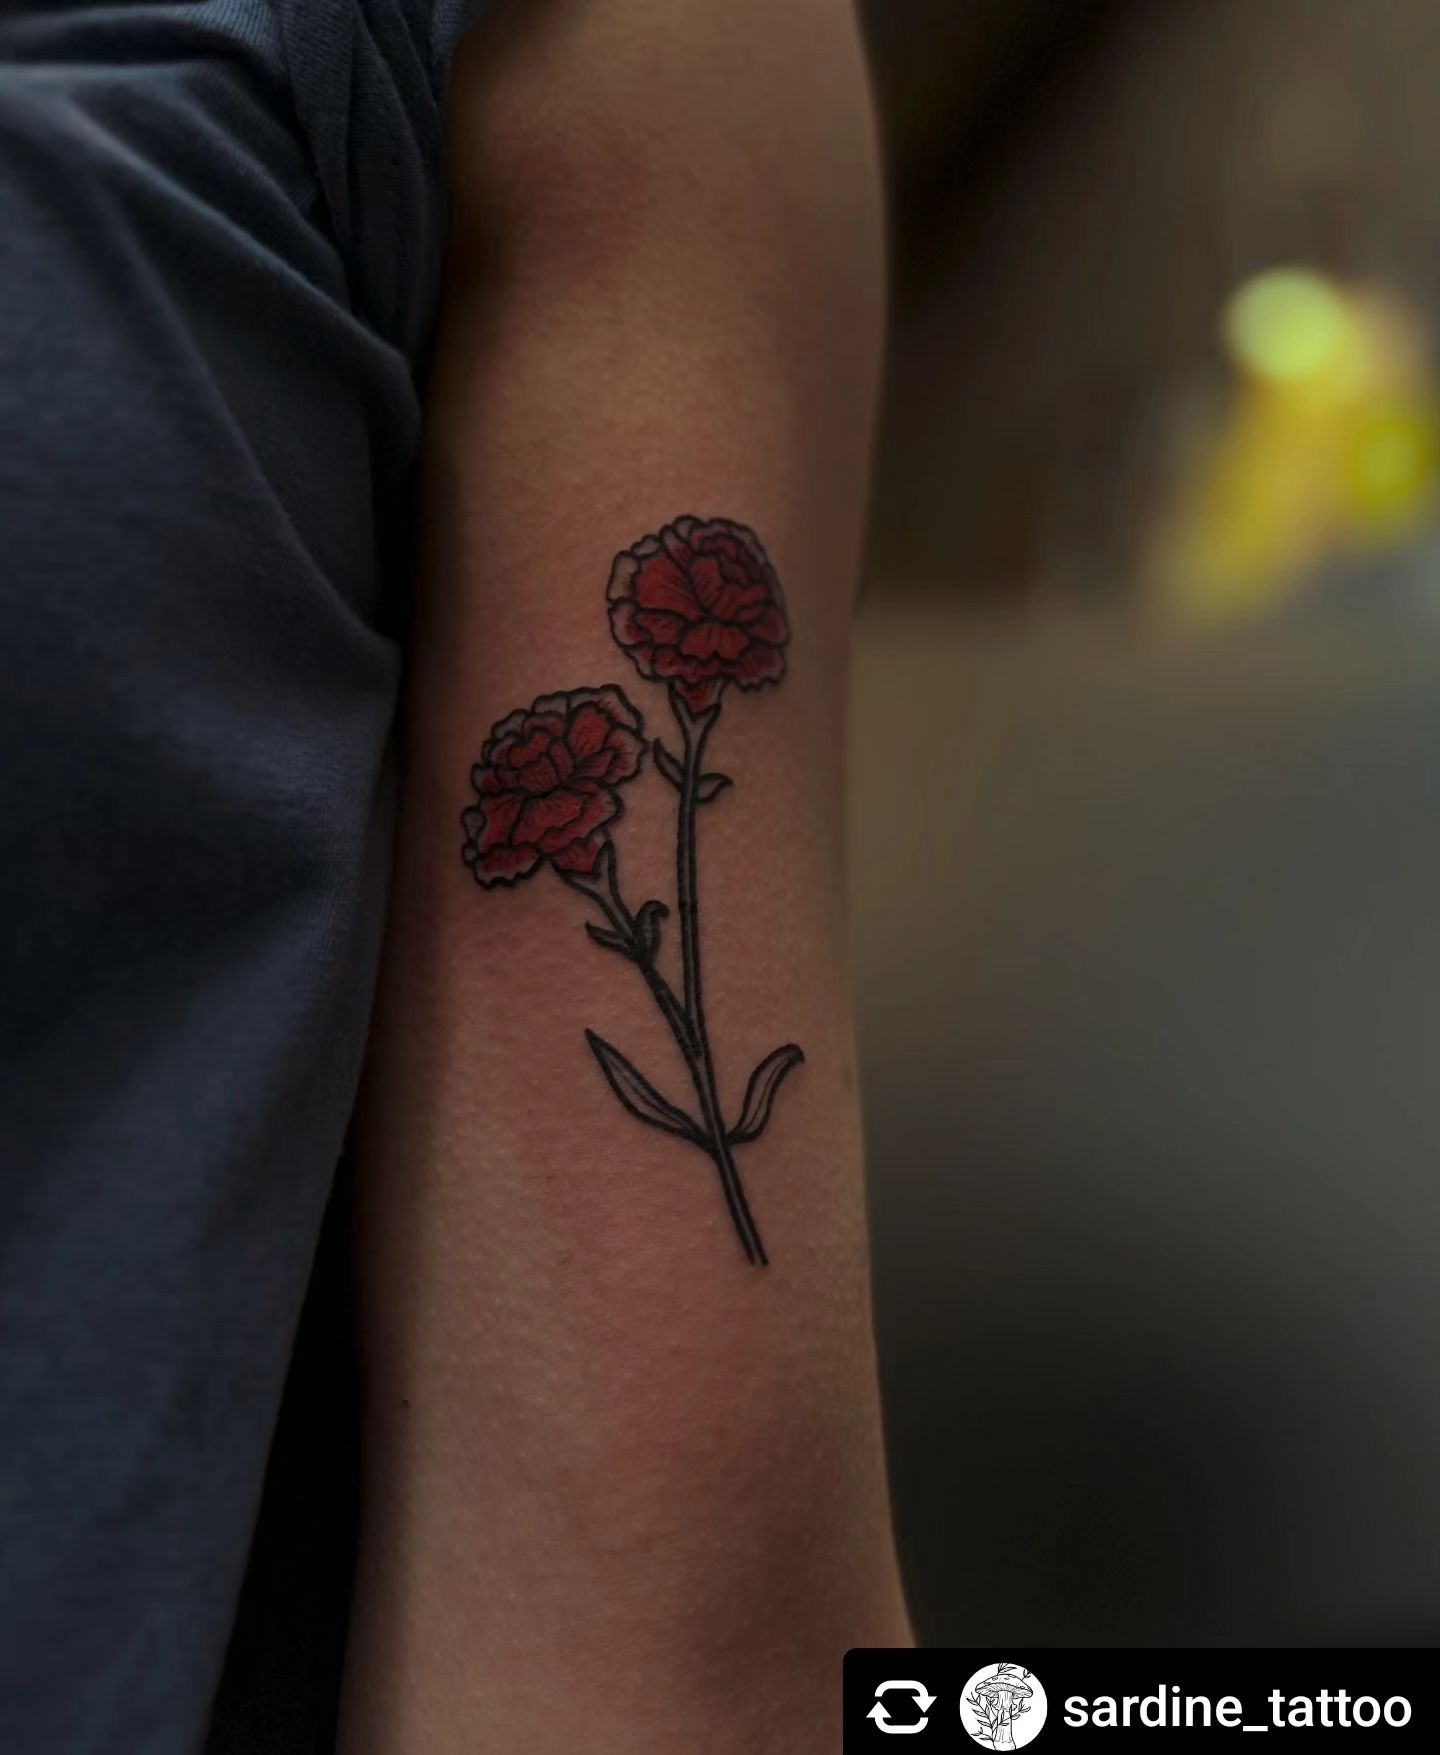 Blumen von @sardine_tattoo __
Thank you so much @soro_fotografie 

 #tattoo #tat